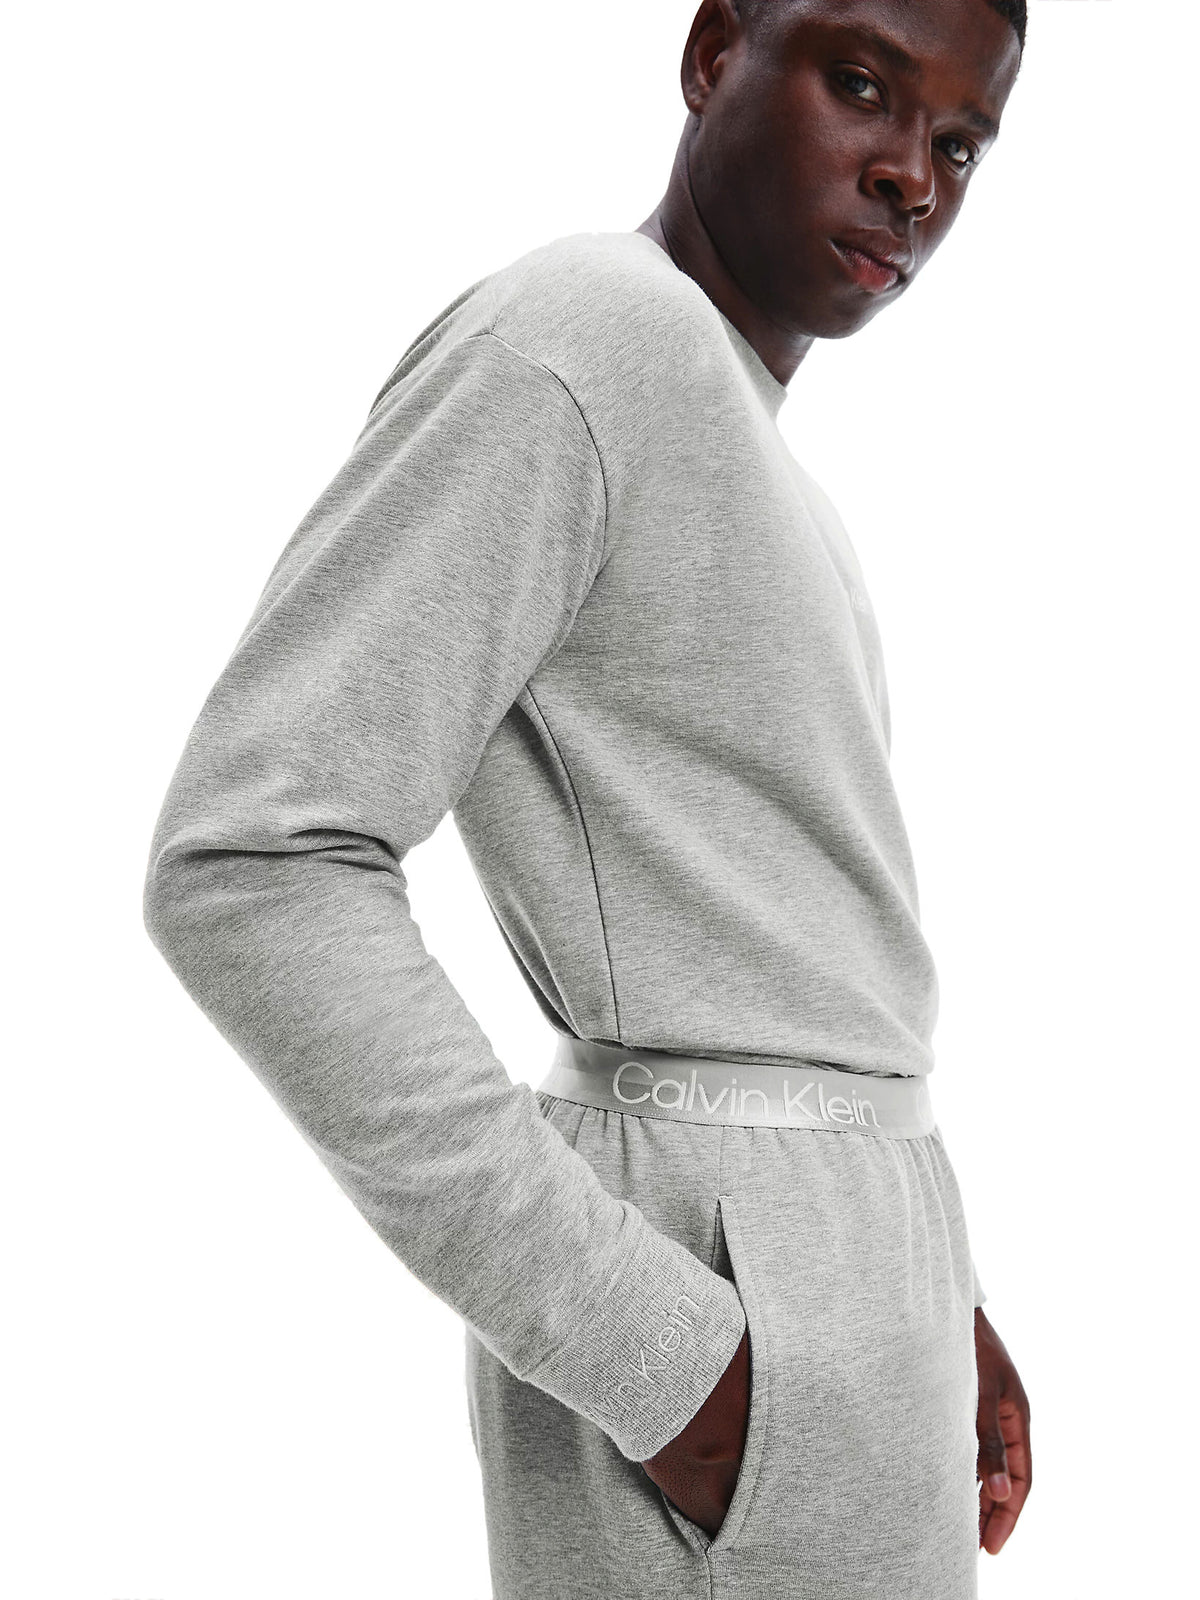 Calvin Klein Mens Lounge Crew Neck Sweatshirt - Modern Structure, 04, 000Nm2172E, Grey Heather